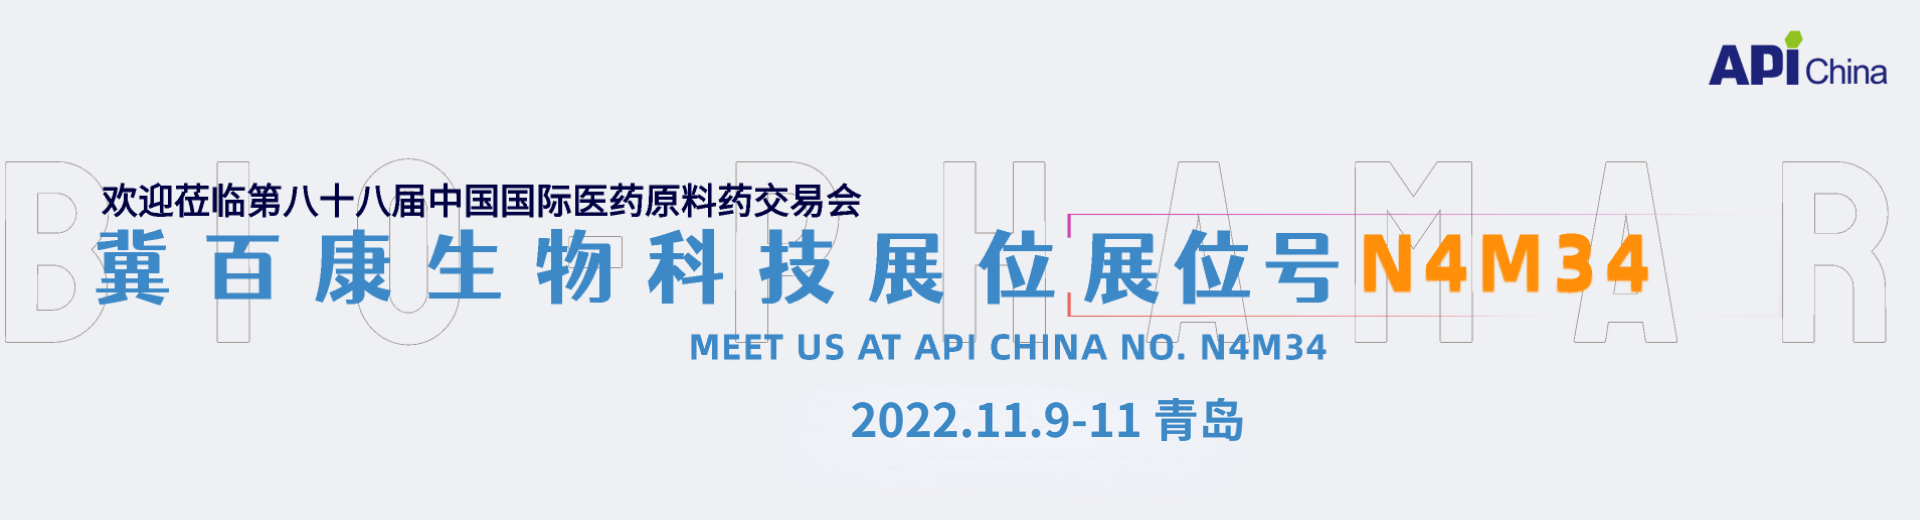 API China